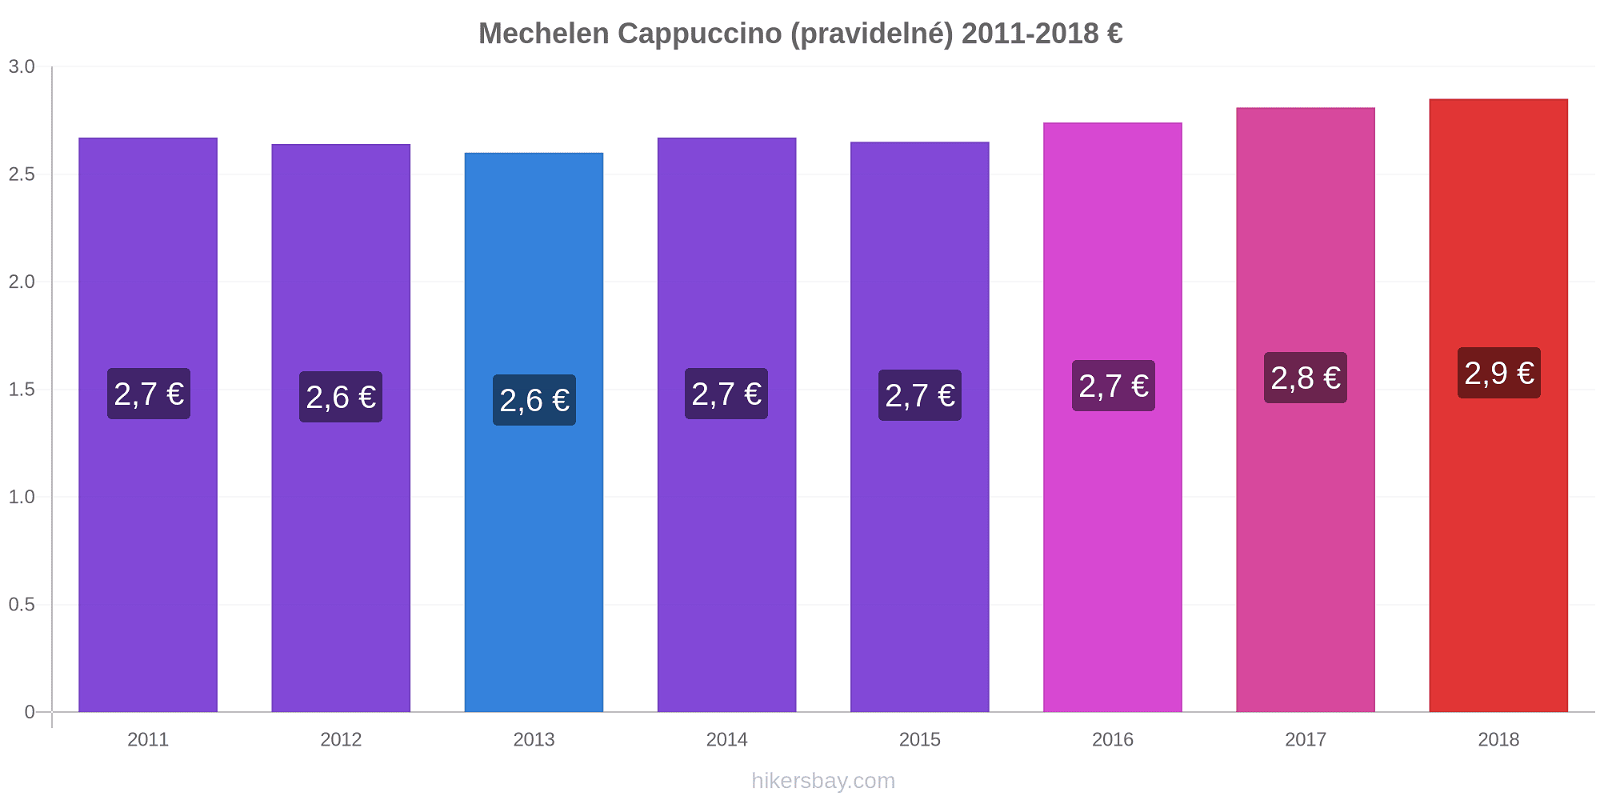 Mechelen změny cen Cappuccino (pravidelné) hikersbay.com